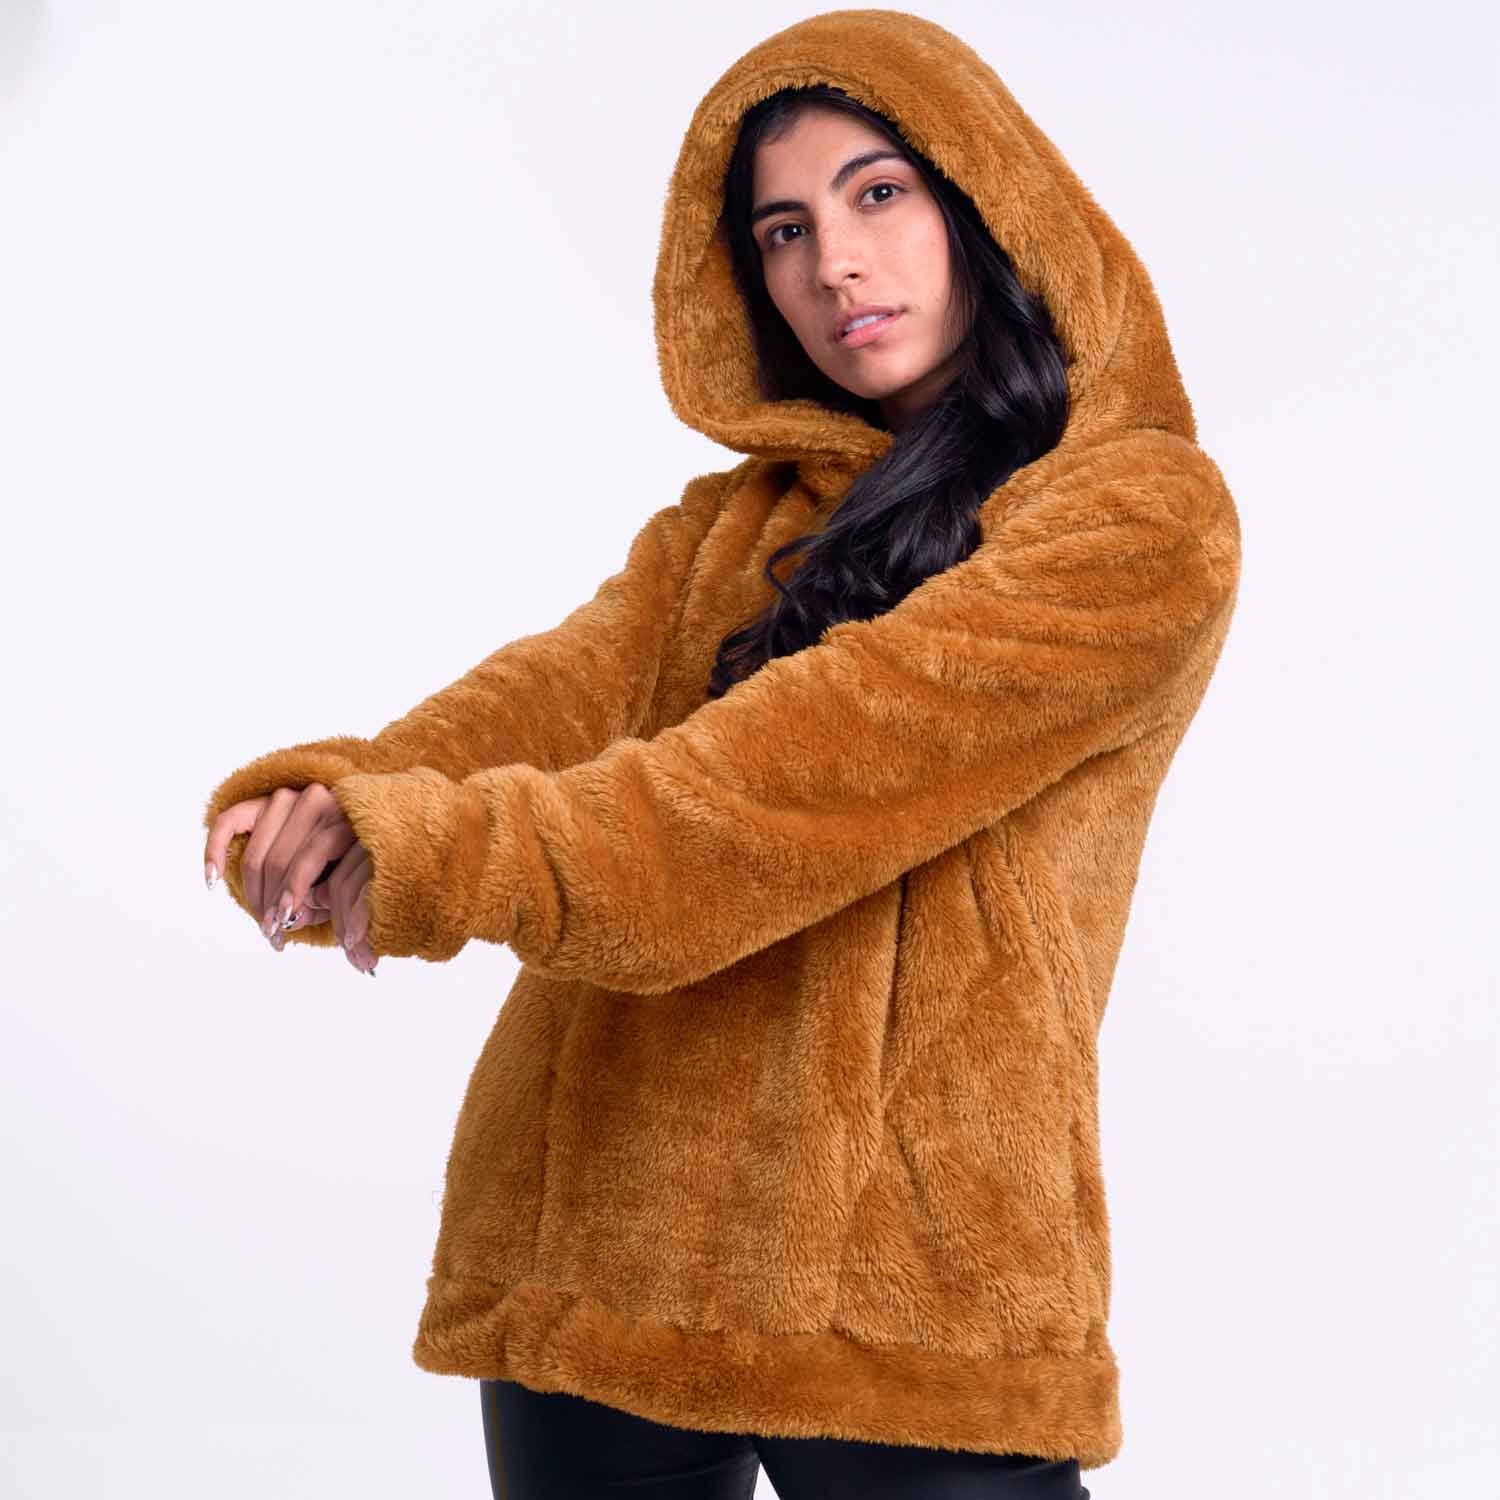 Saco para mujer casual y cómodo - Hoodie gris oscuro Atacama - Yeti